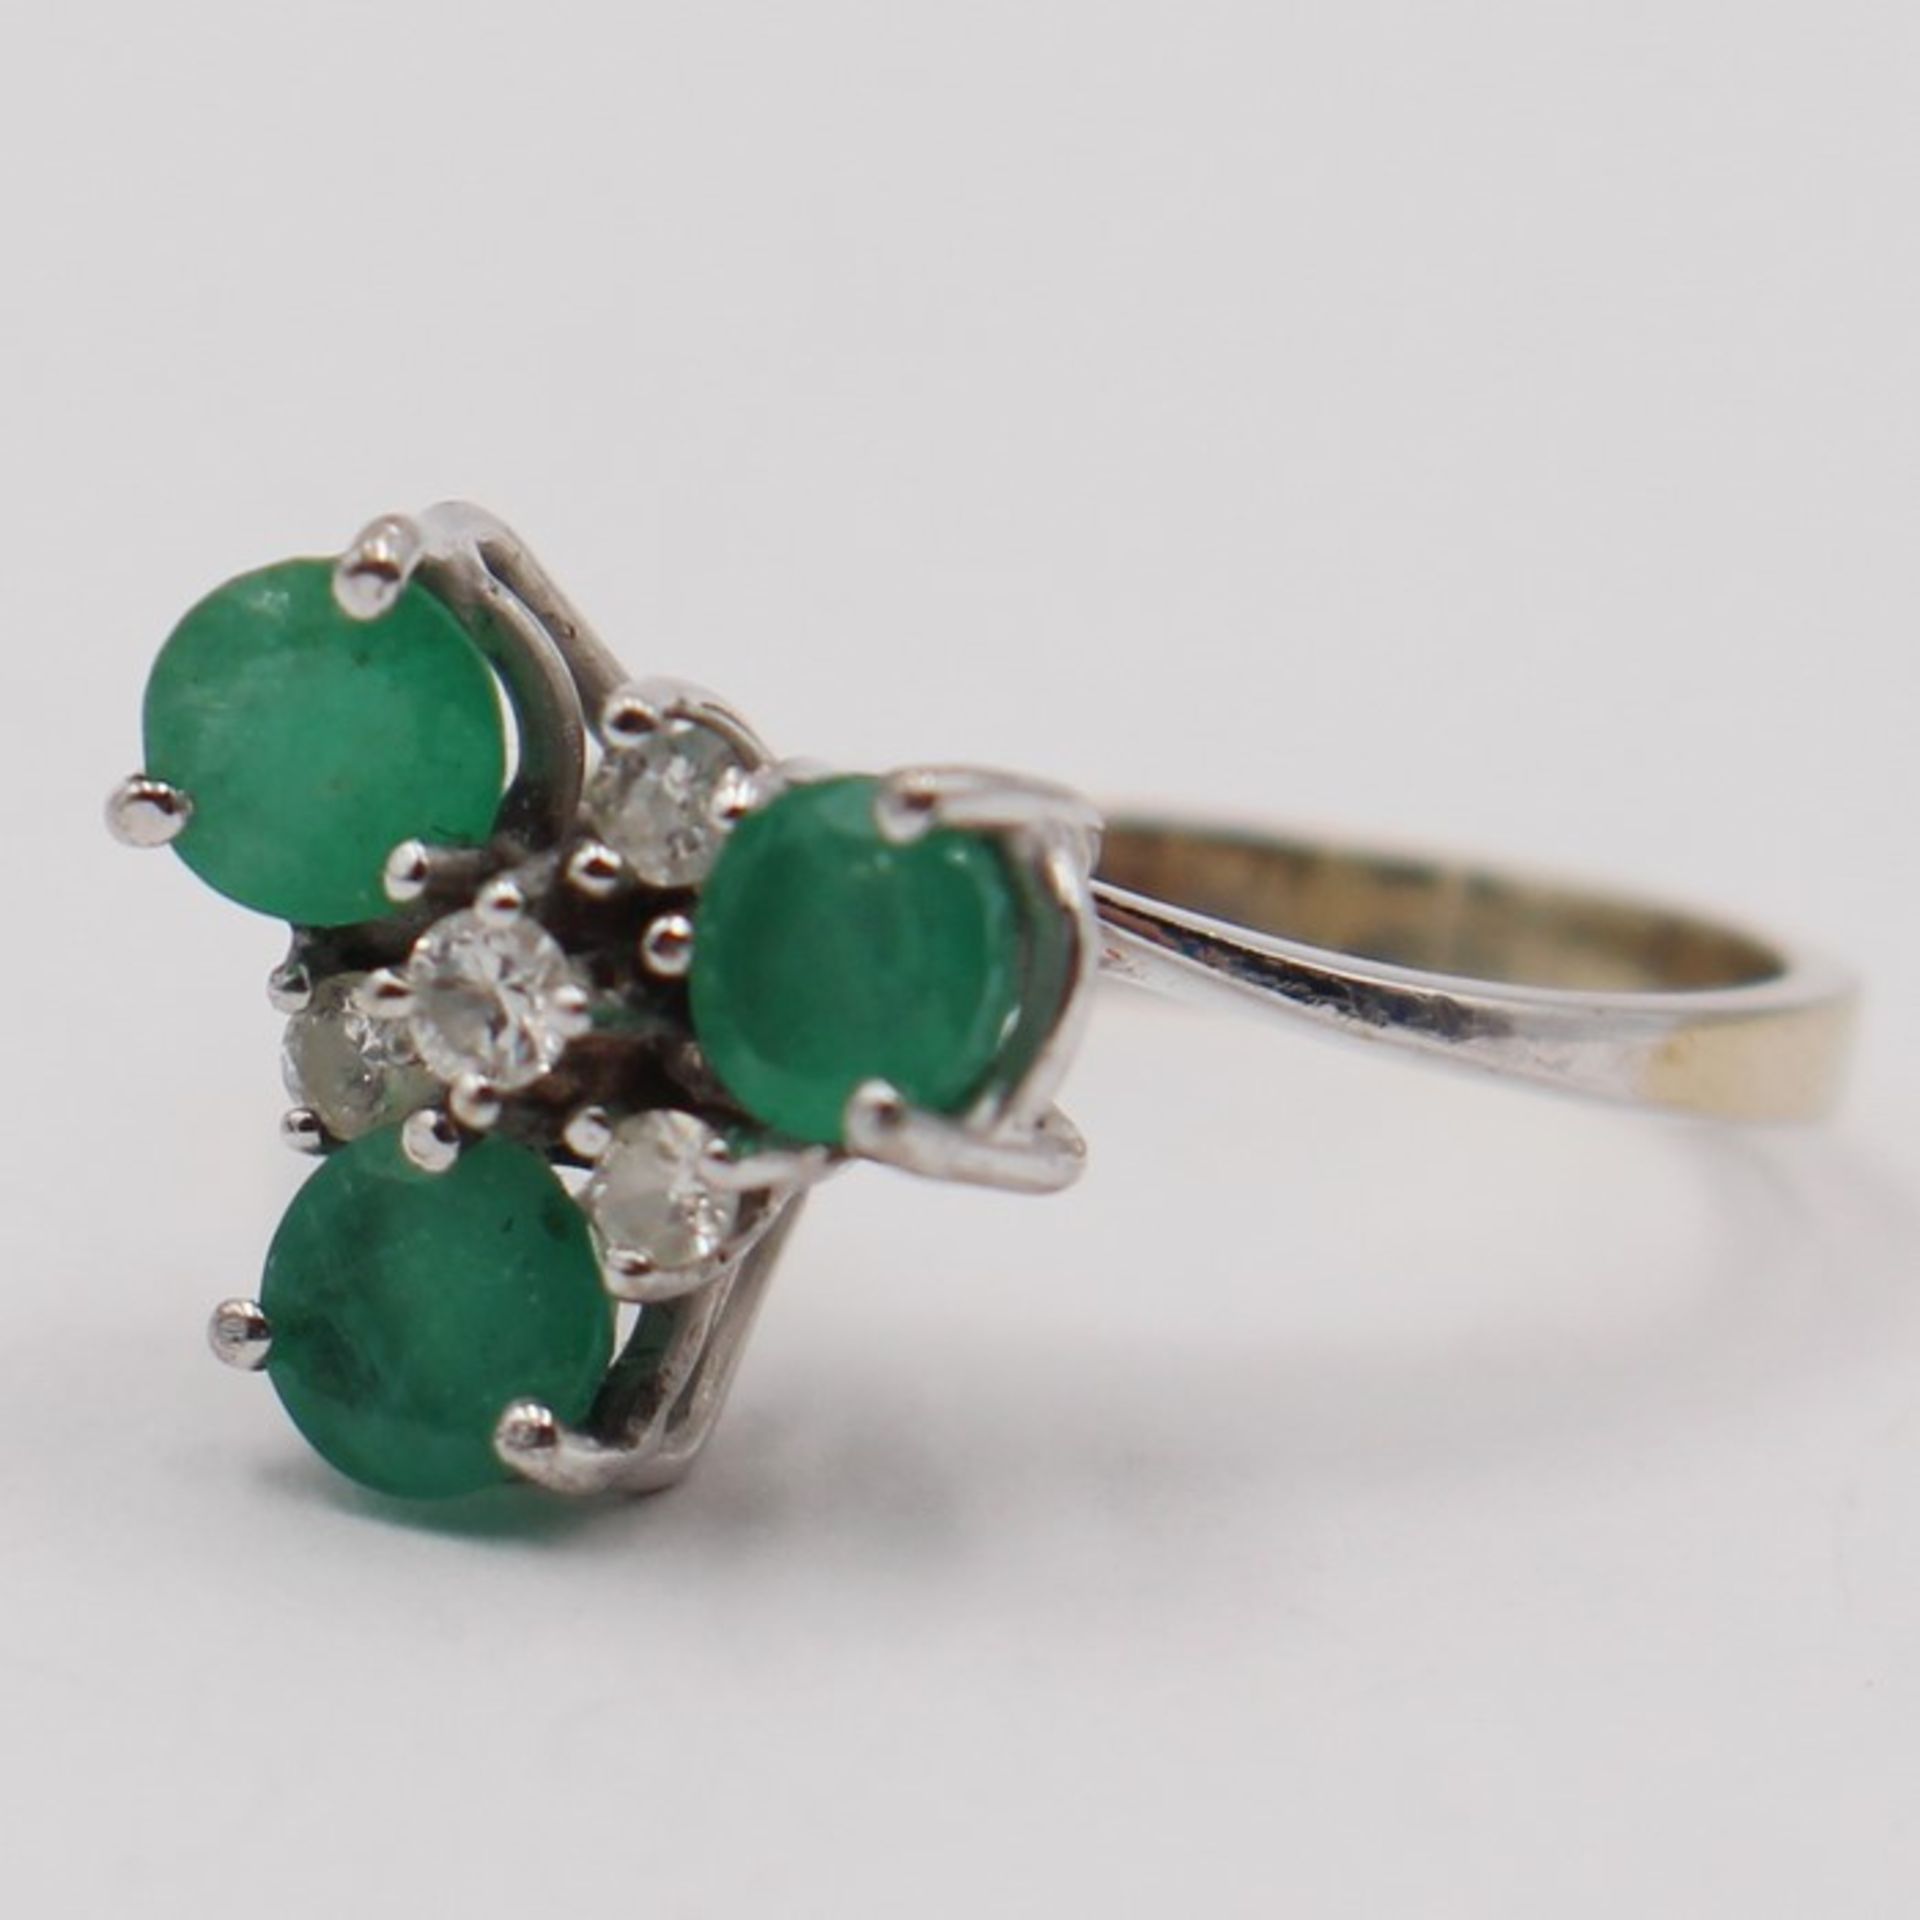 Diamant/Smaragd - DamenringWG 750, kleeblattförmiger Ringkopf besetzt mit 3 facettierten